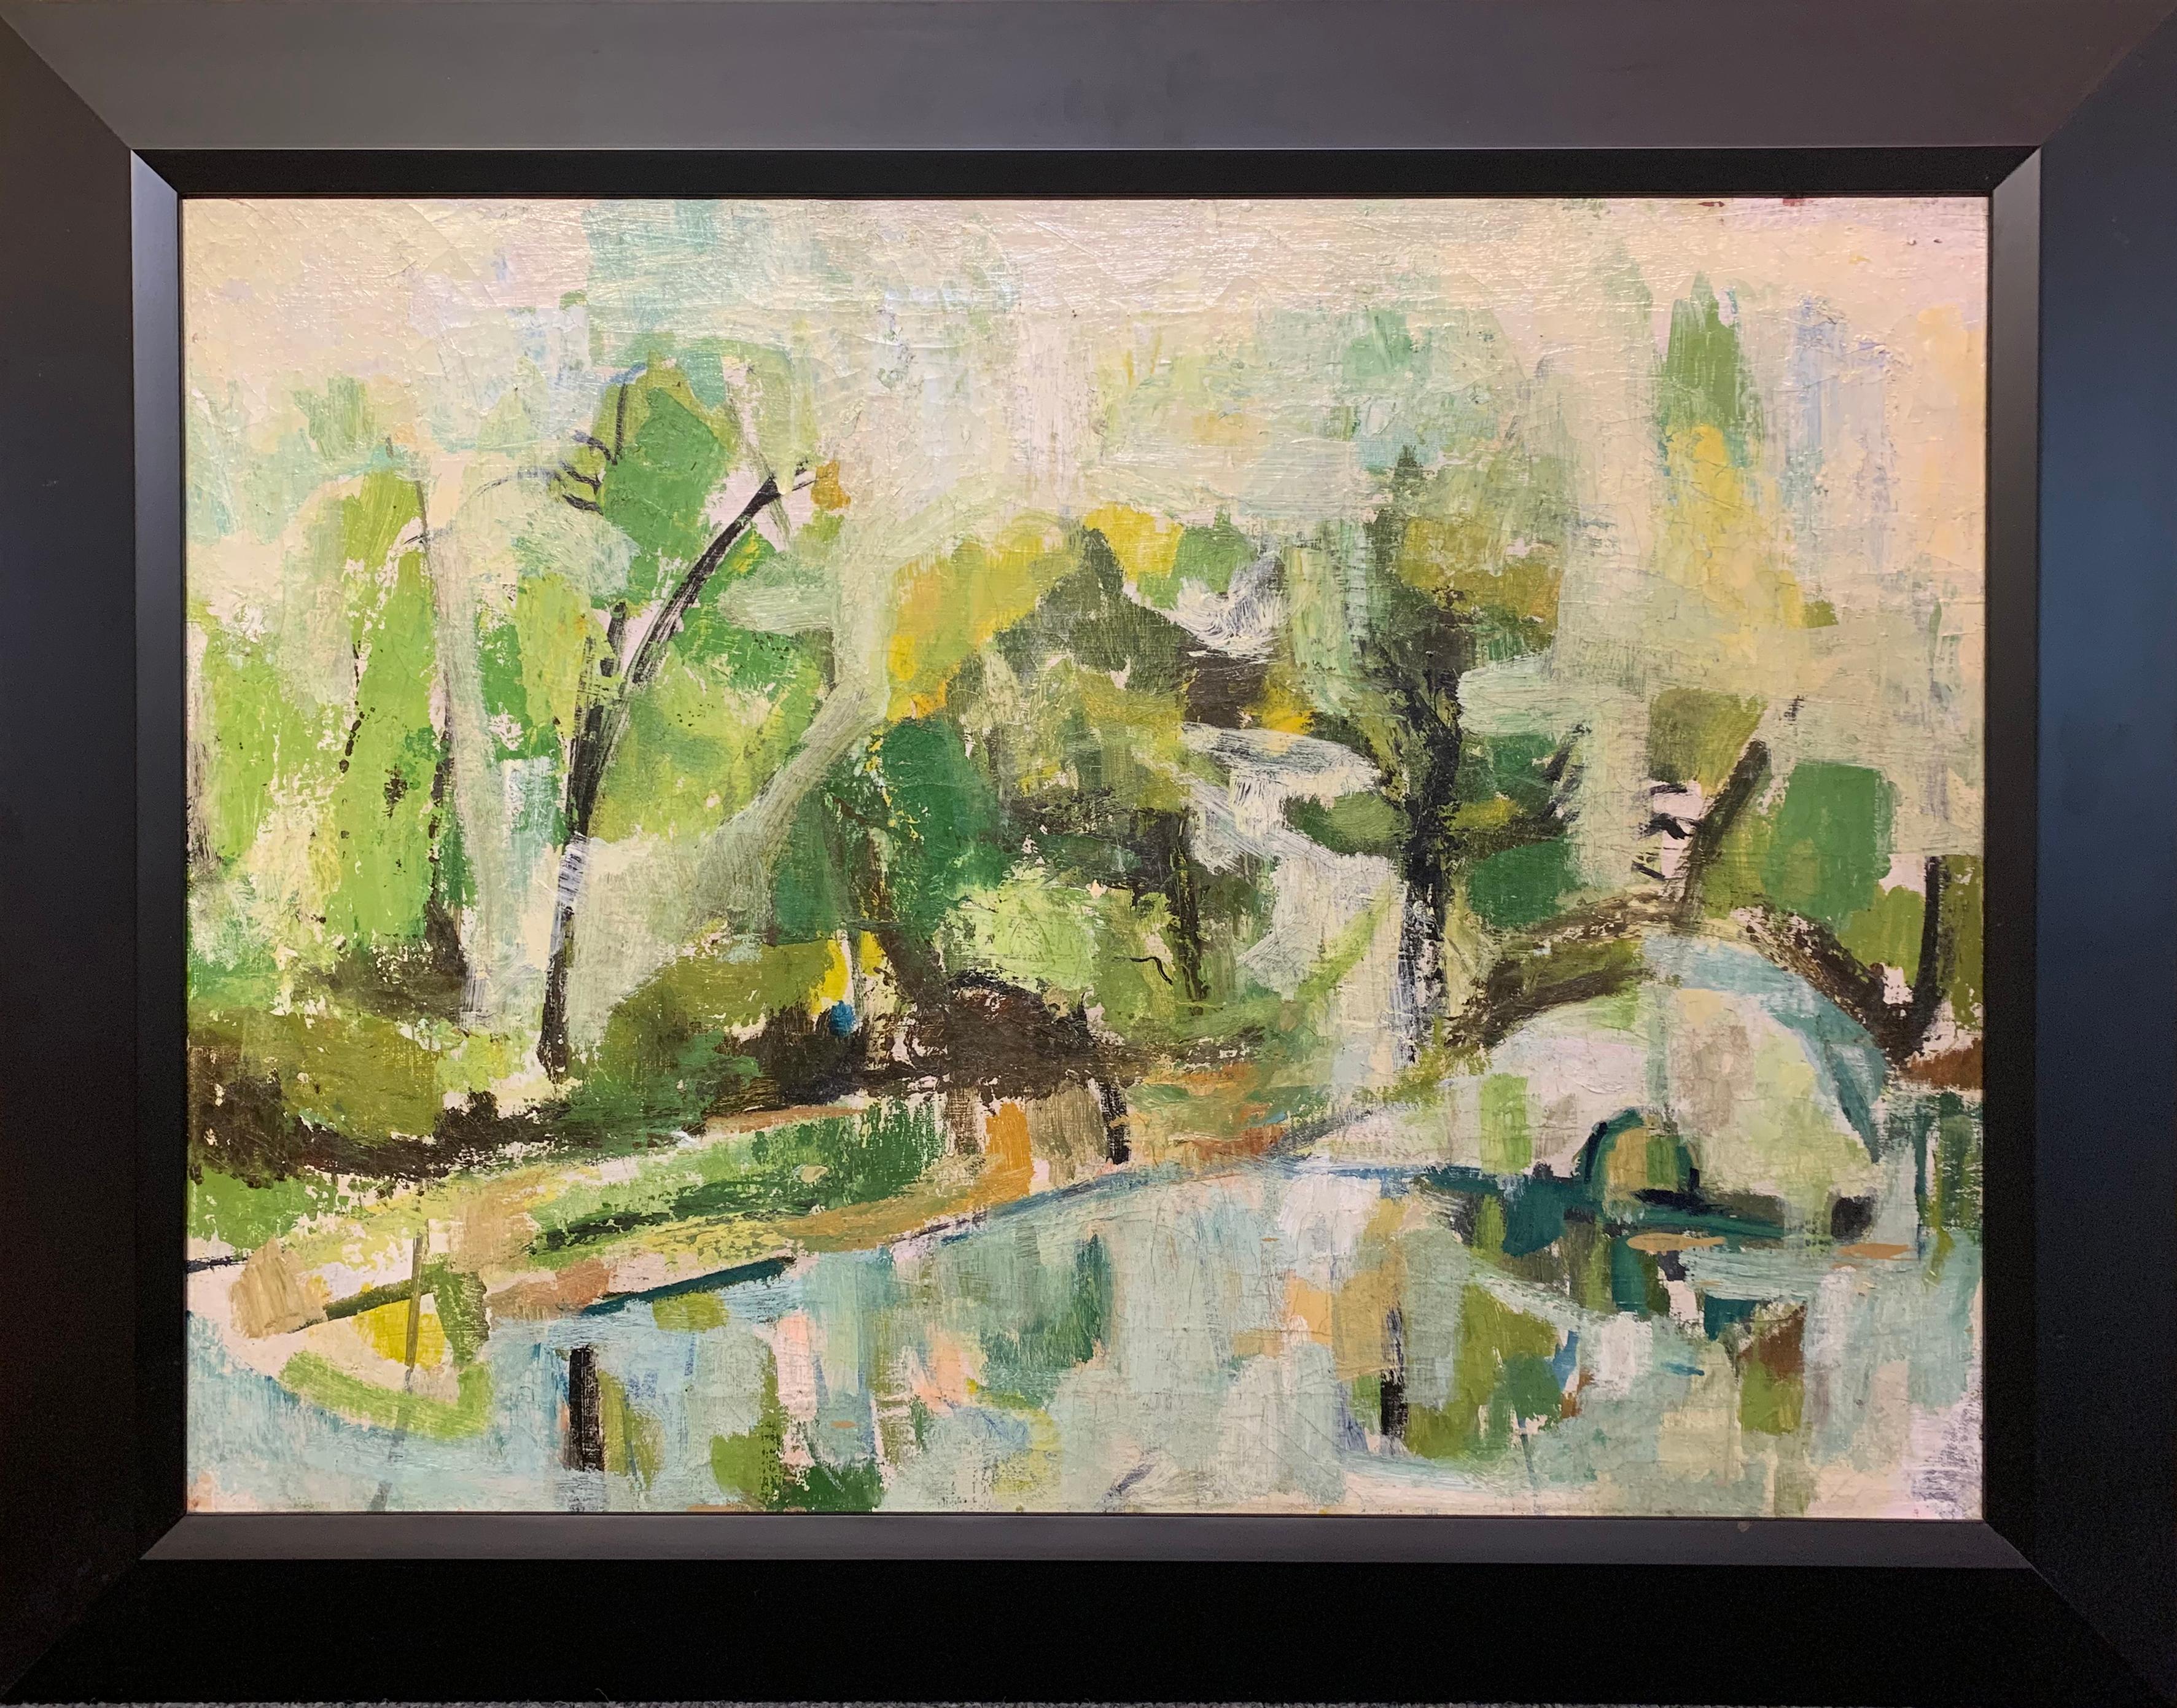 Grüne Landschaft, expressionistisches Gemälde des Künstlers aus Philadelphia